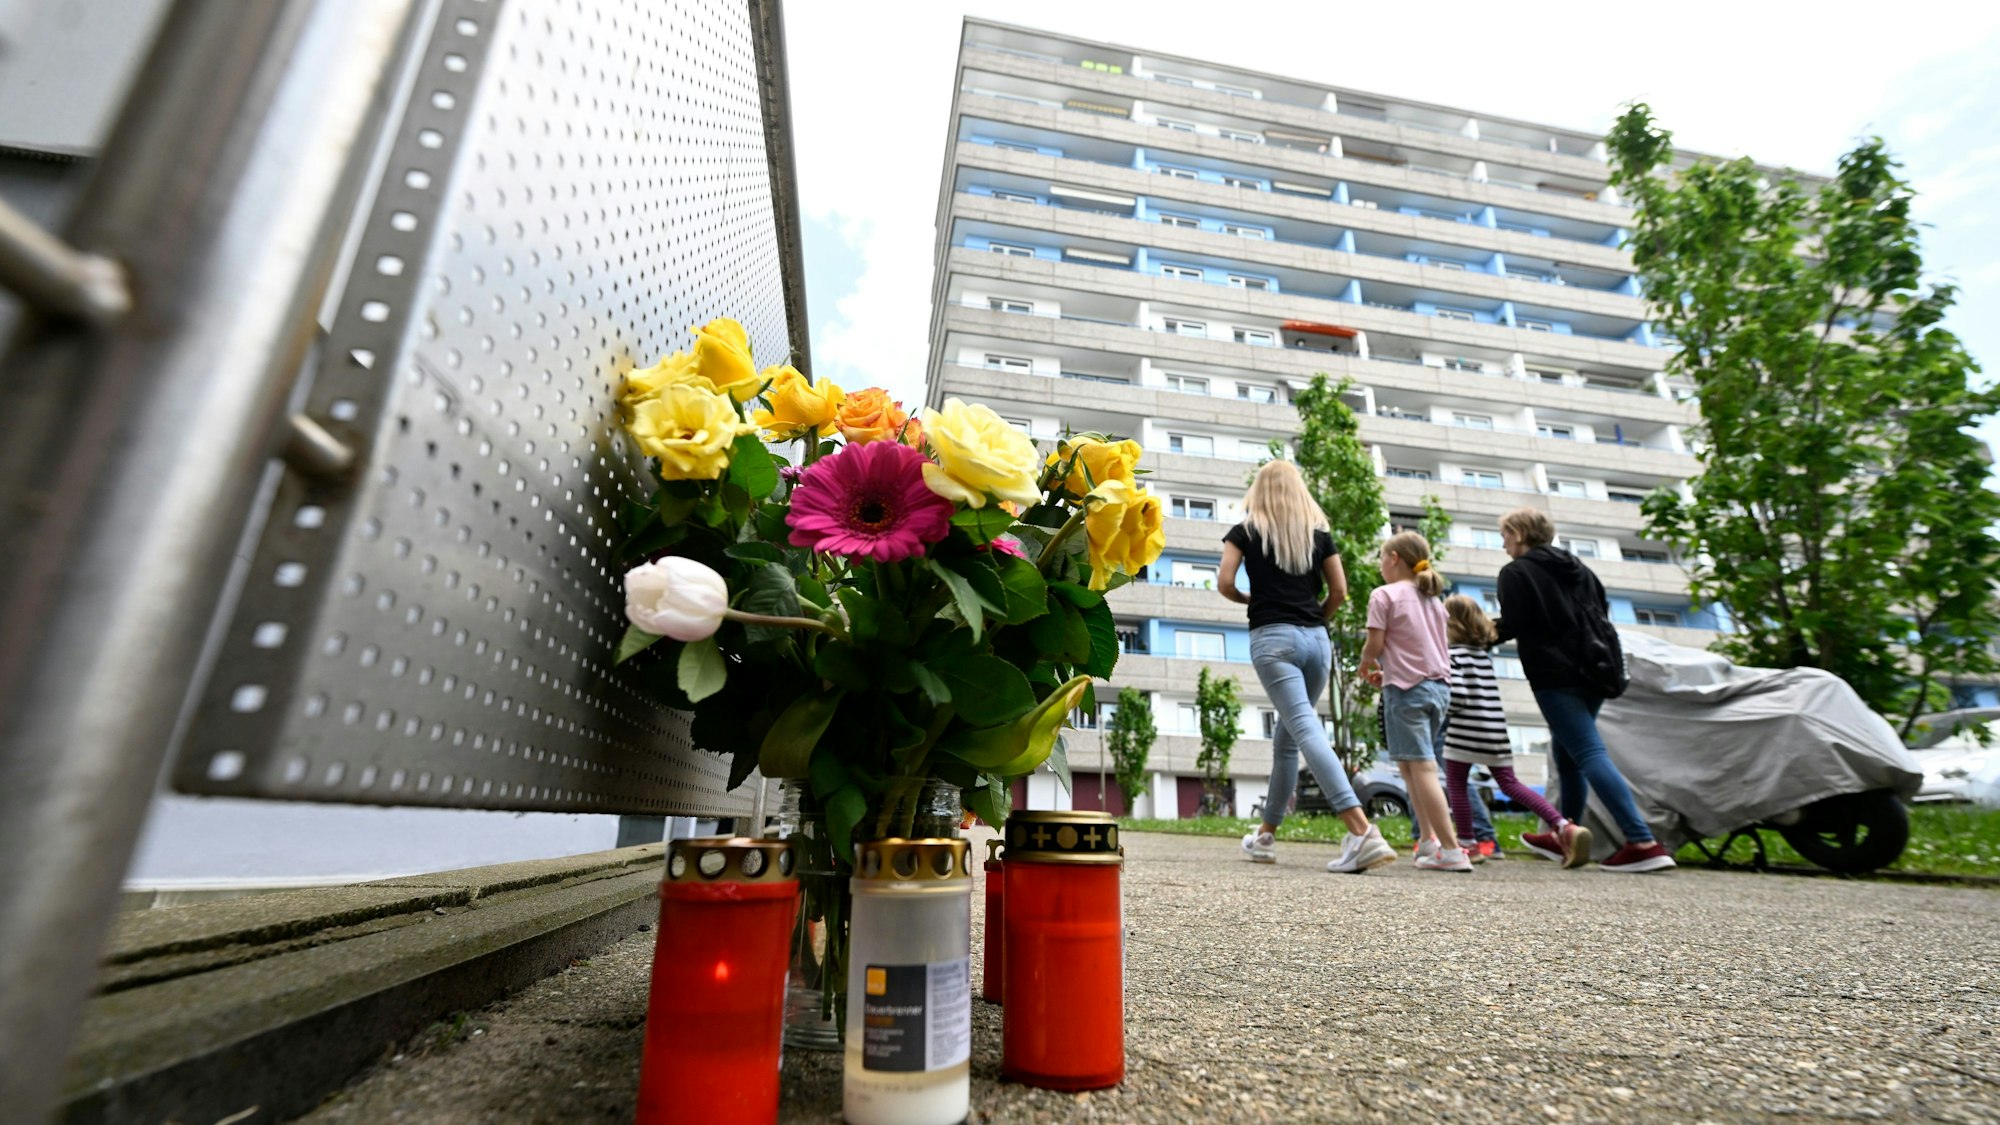 Bürger haben zum Gedenken an die Opfer der Explosion in einem Hochhaus, bei dem mehrere Einsatzkräfte von Polizei und Feuerwehr schwer verletzt wurden, am Tatort Kerzen und Blumen niedergelegt.